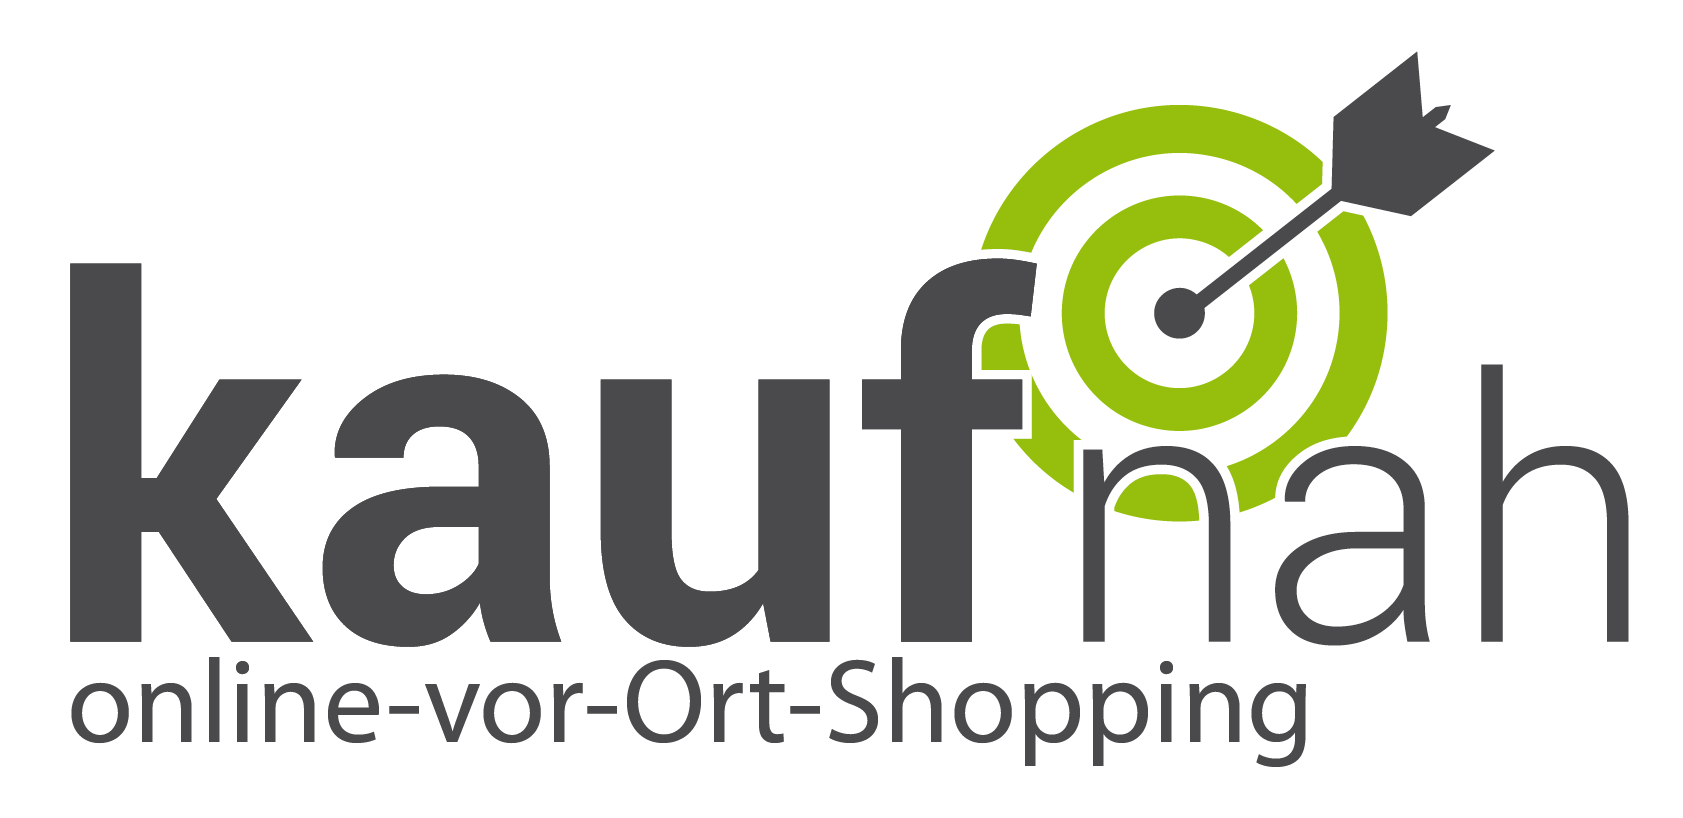 Kaufnah GmbH